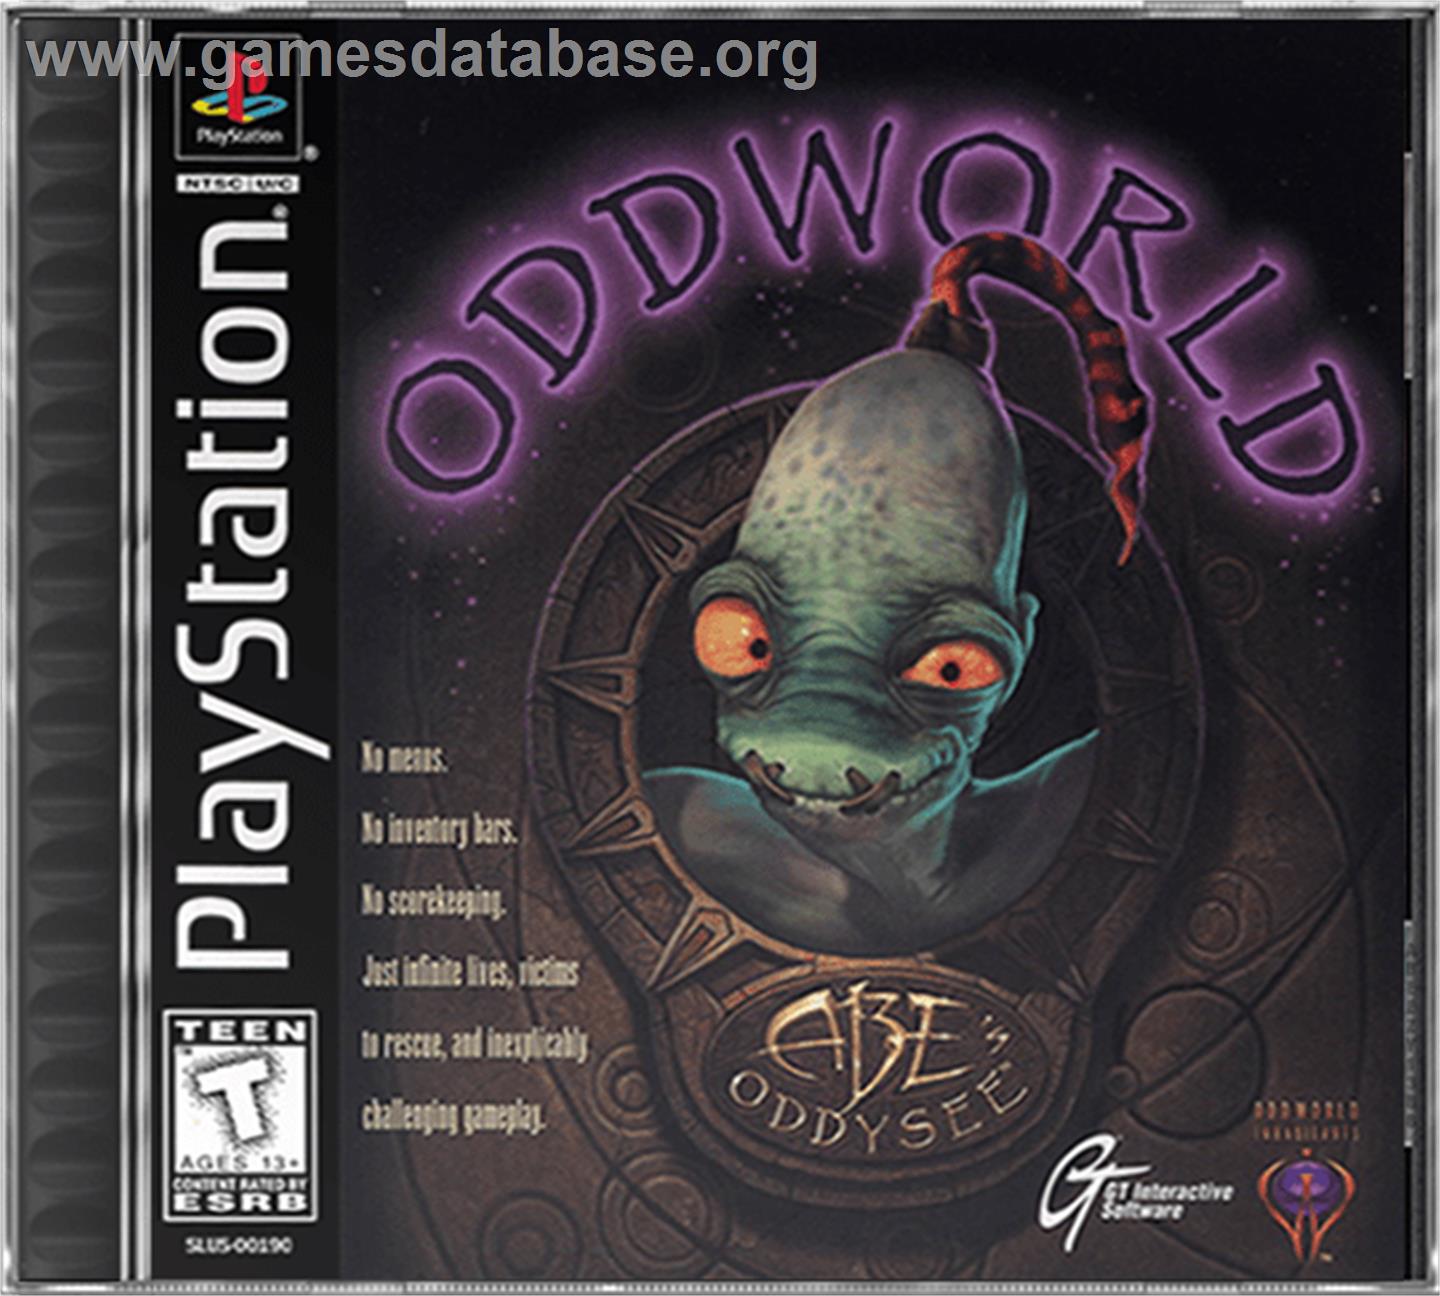 Oddworld: Abe's Oddysee - Sony Playstation - Artwork - Box